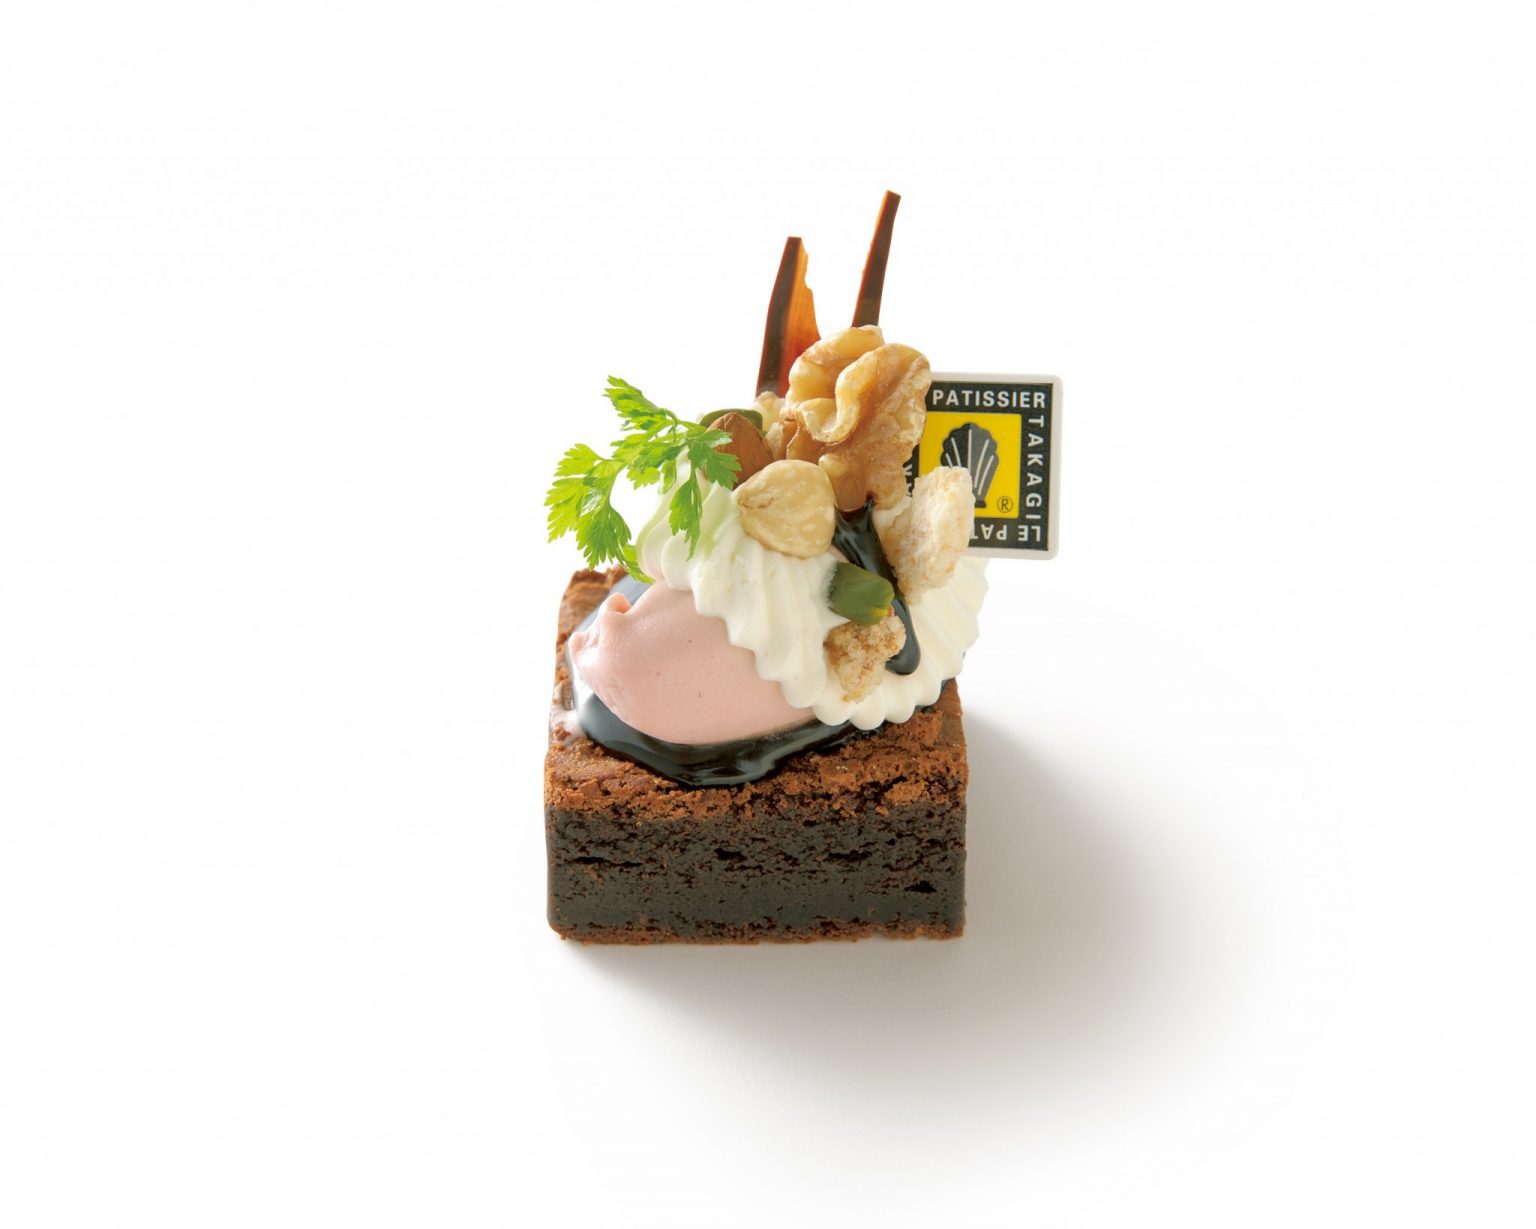 〈LE PATISSIER TAKAGI本店〉の「限定ショコラナッツケーキ」